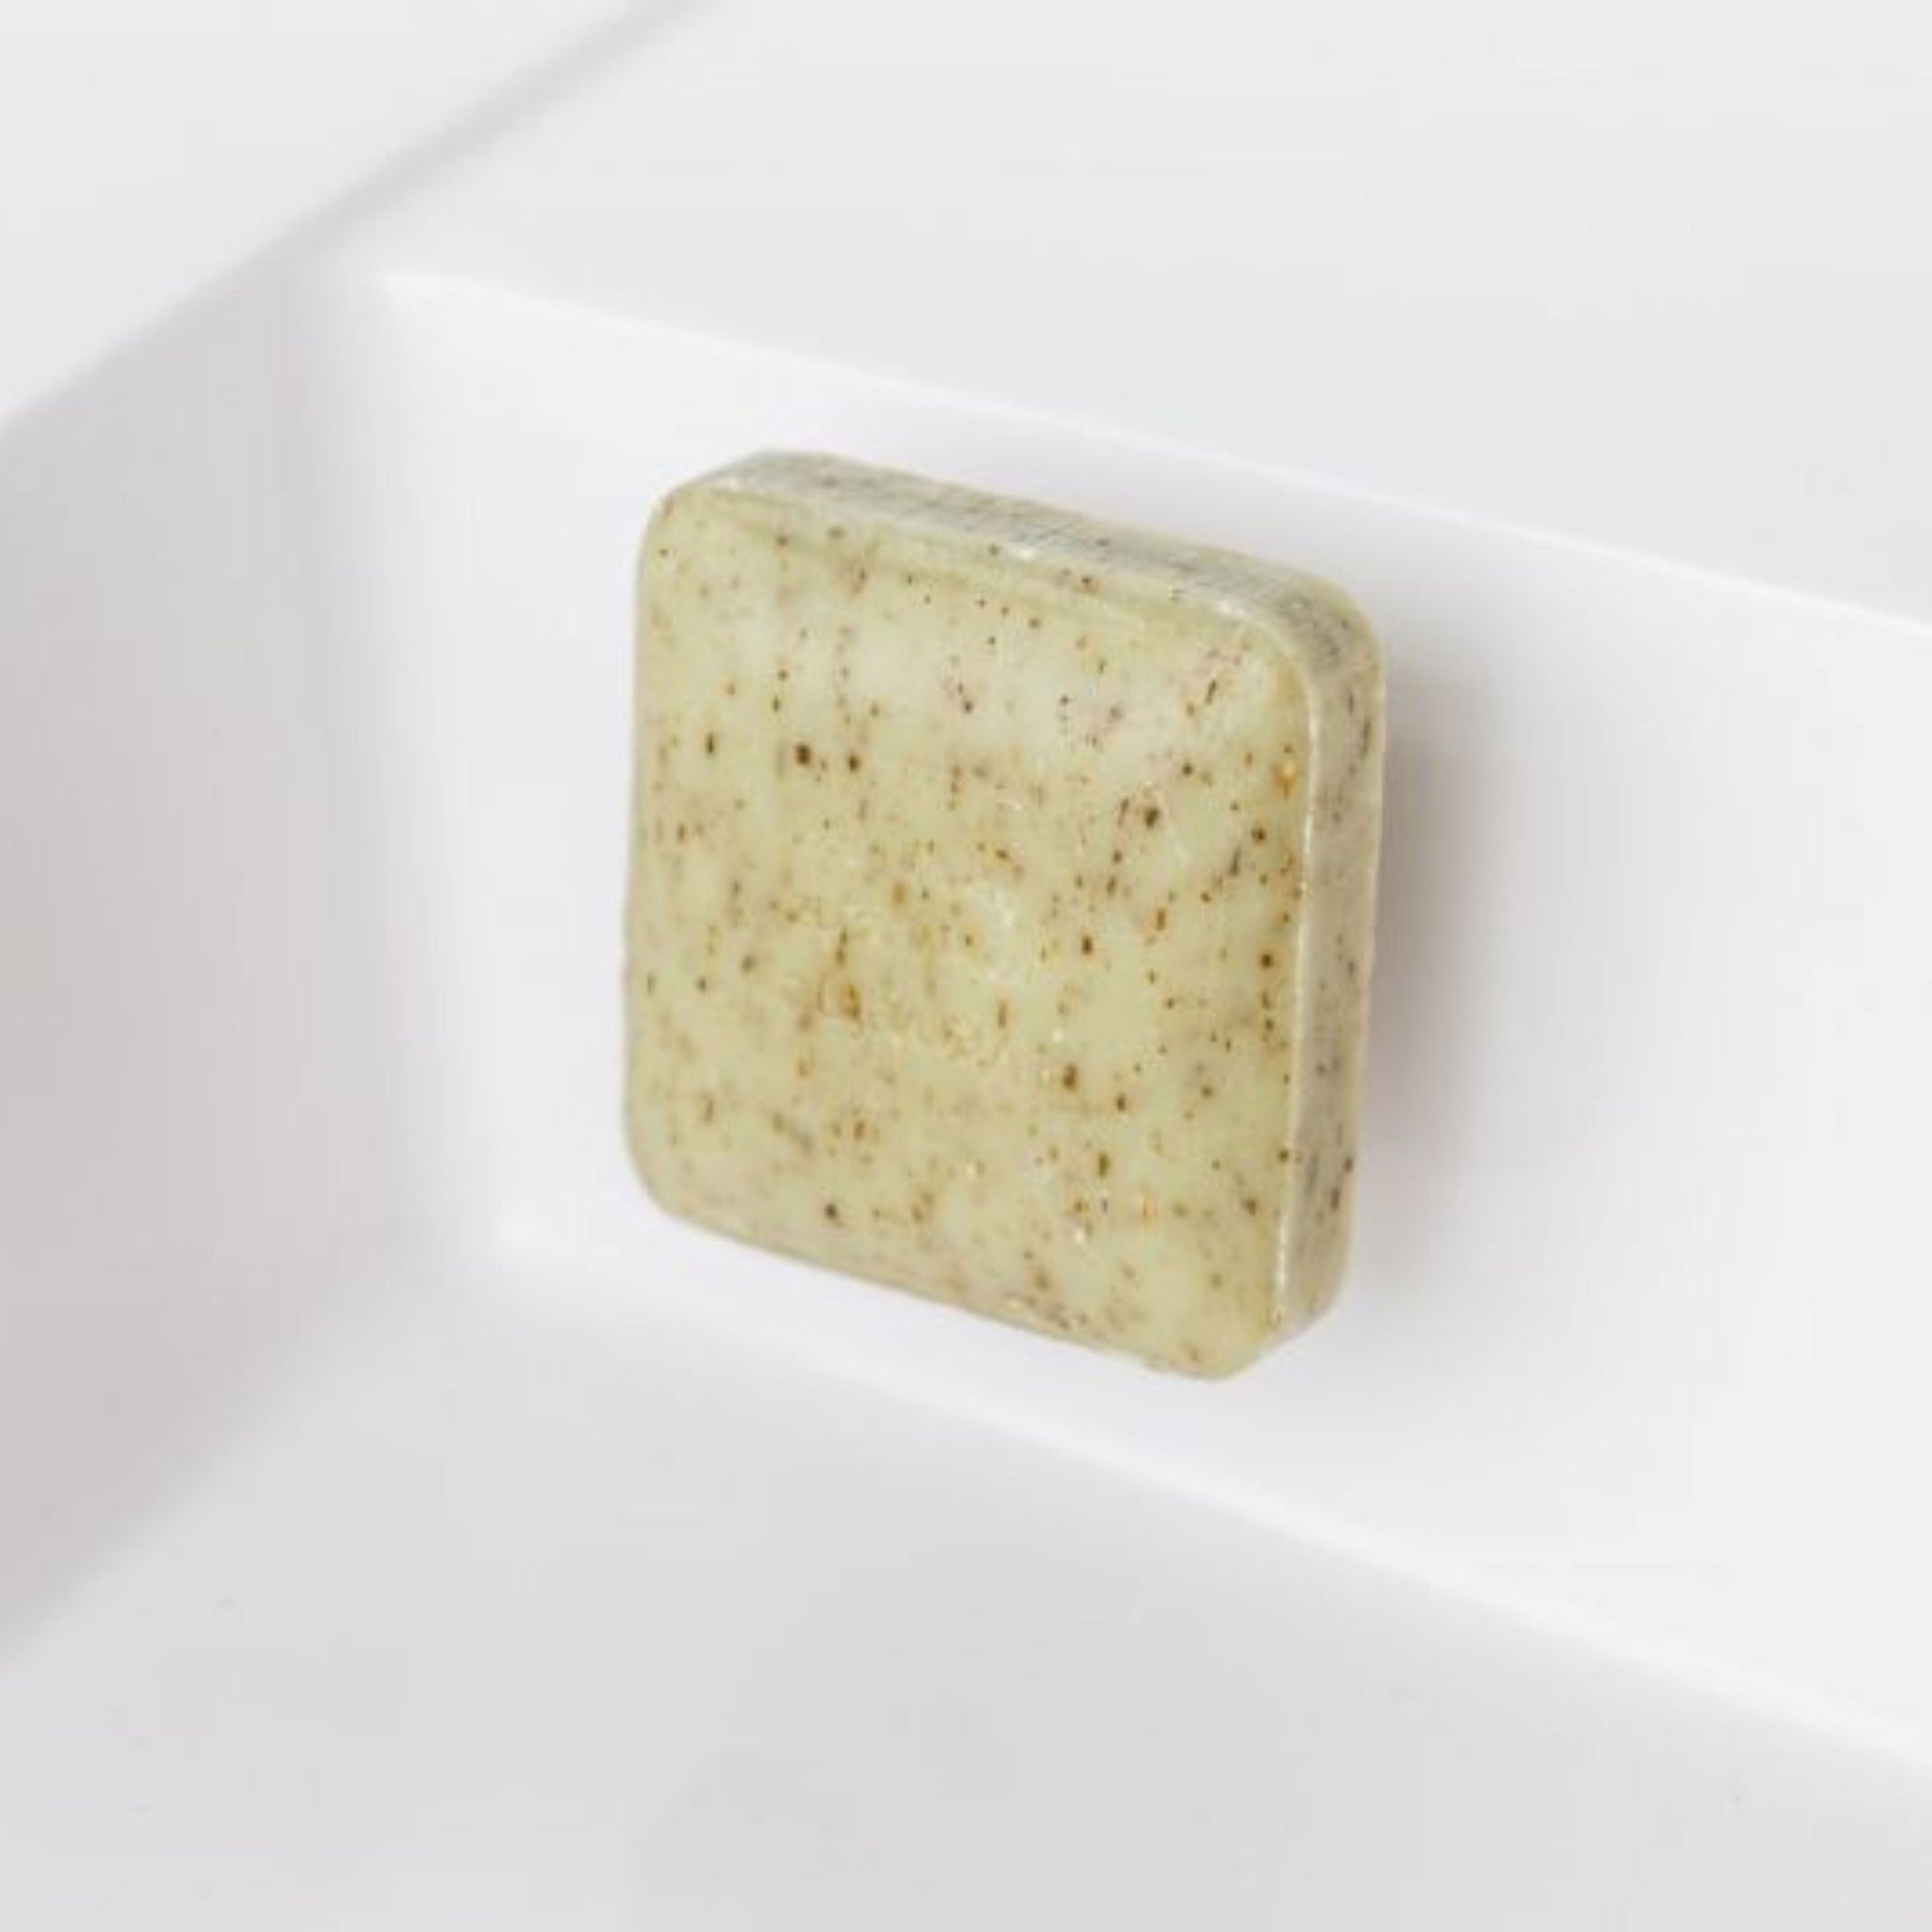 Magnet für feste Seife natürliche Hautpflege Bad Zubehör oelfaktorisch